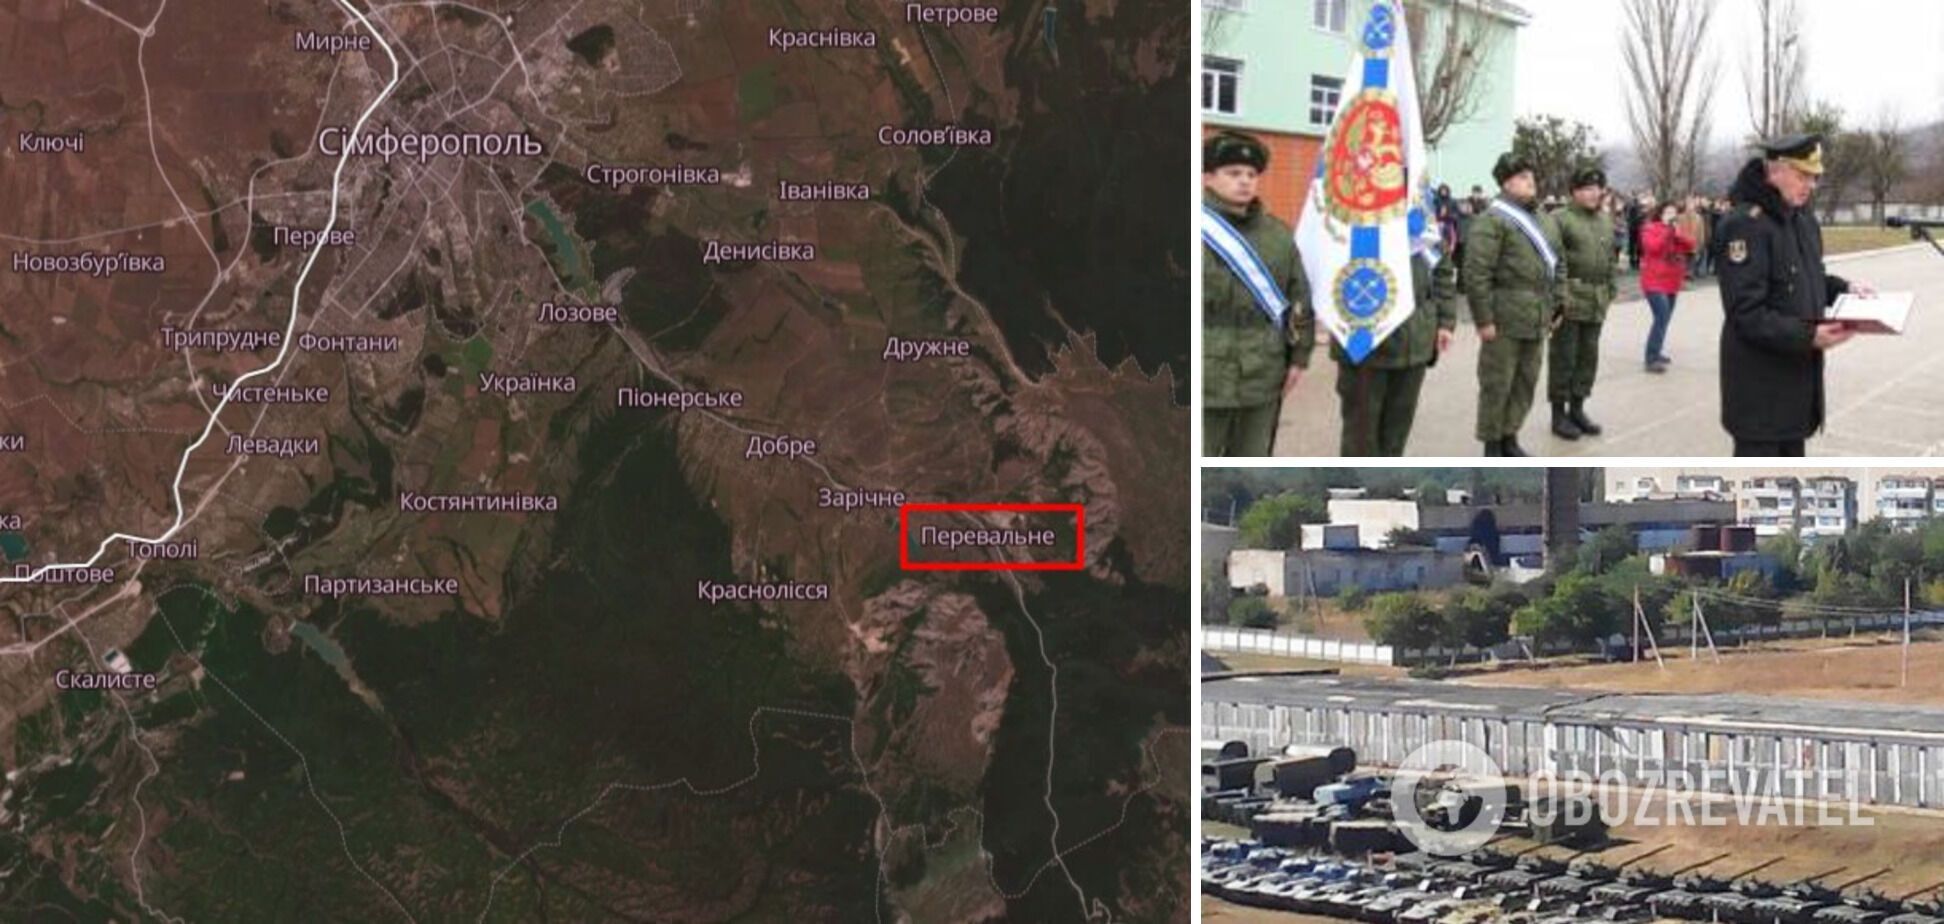 Прилет был по базе 126-й бригады ЧФ РФ: всплыли подробности новых взрывов в Крыму